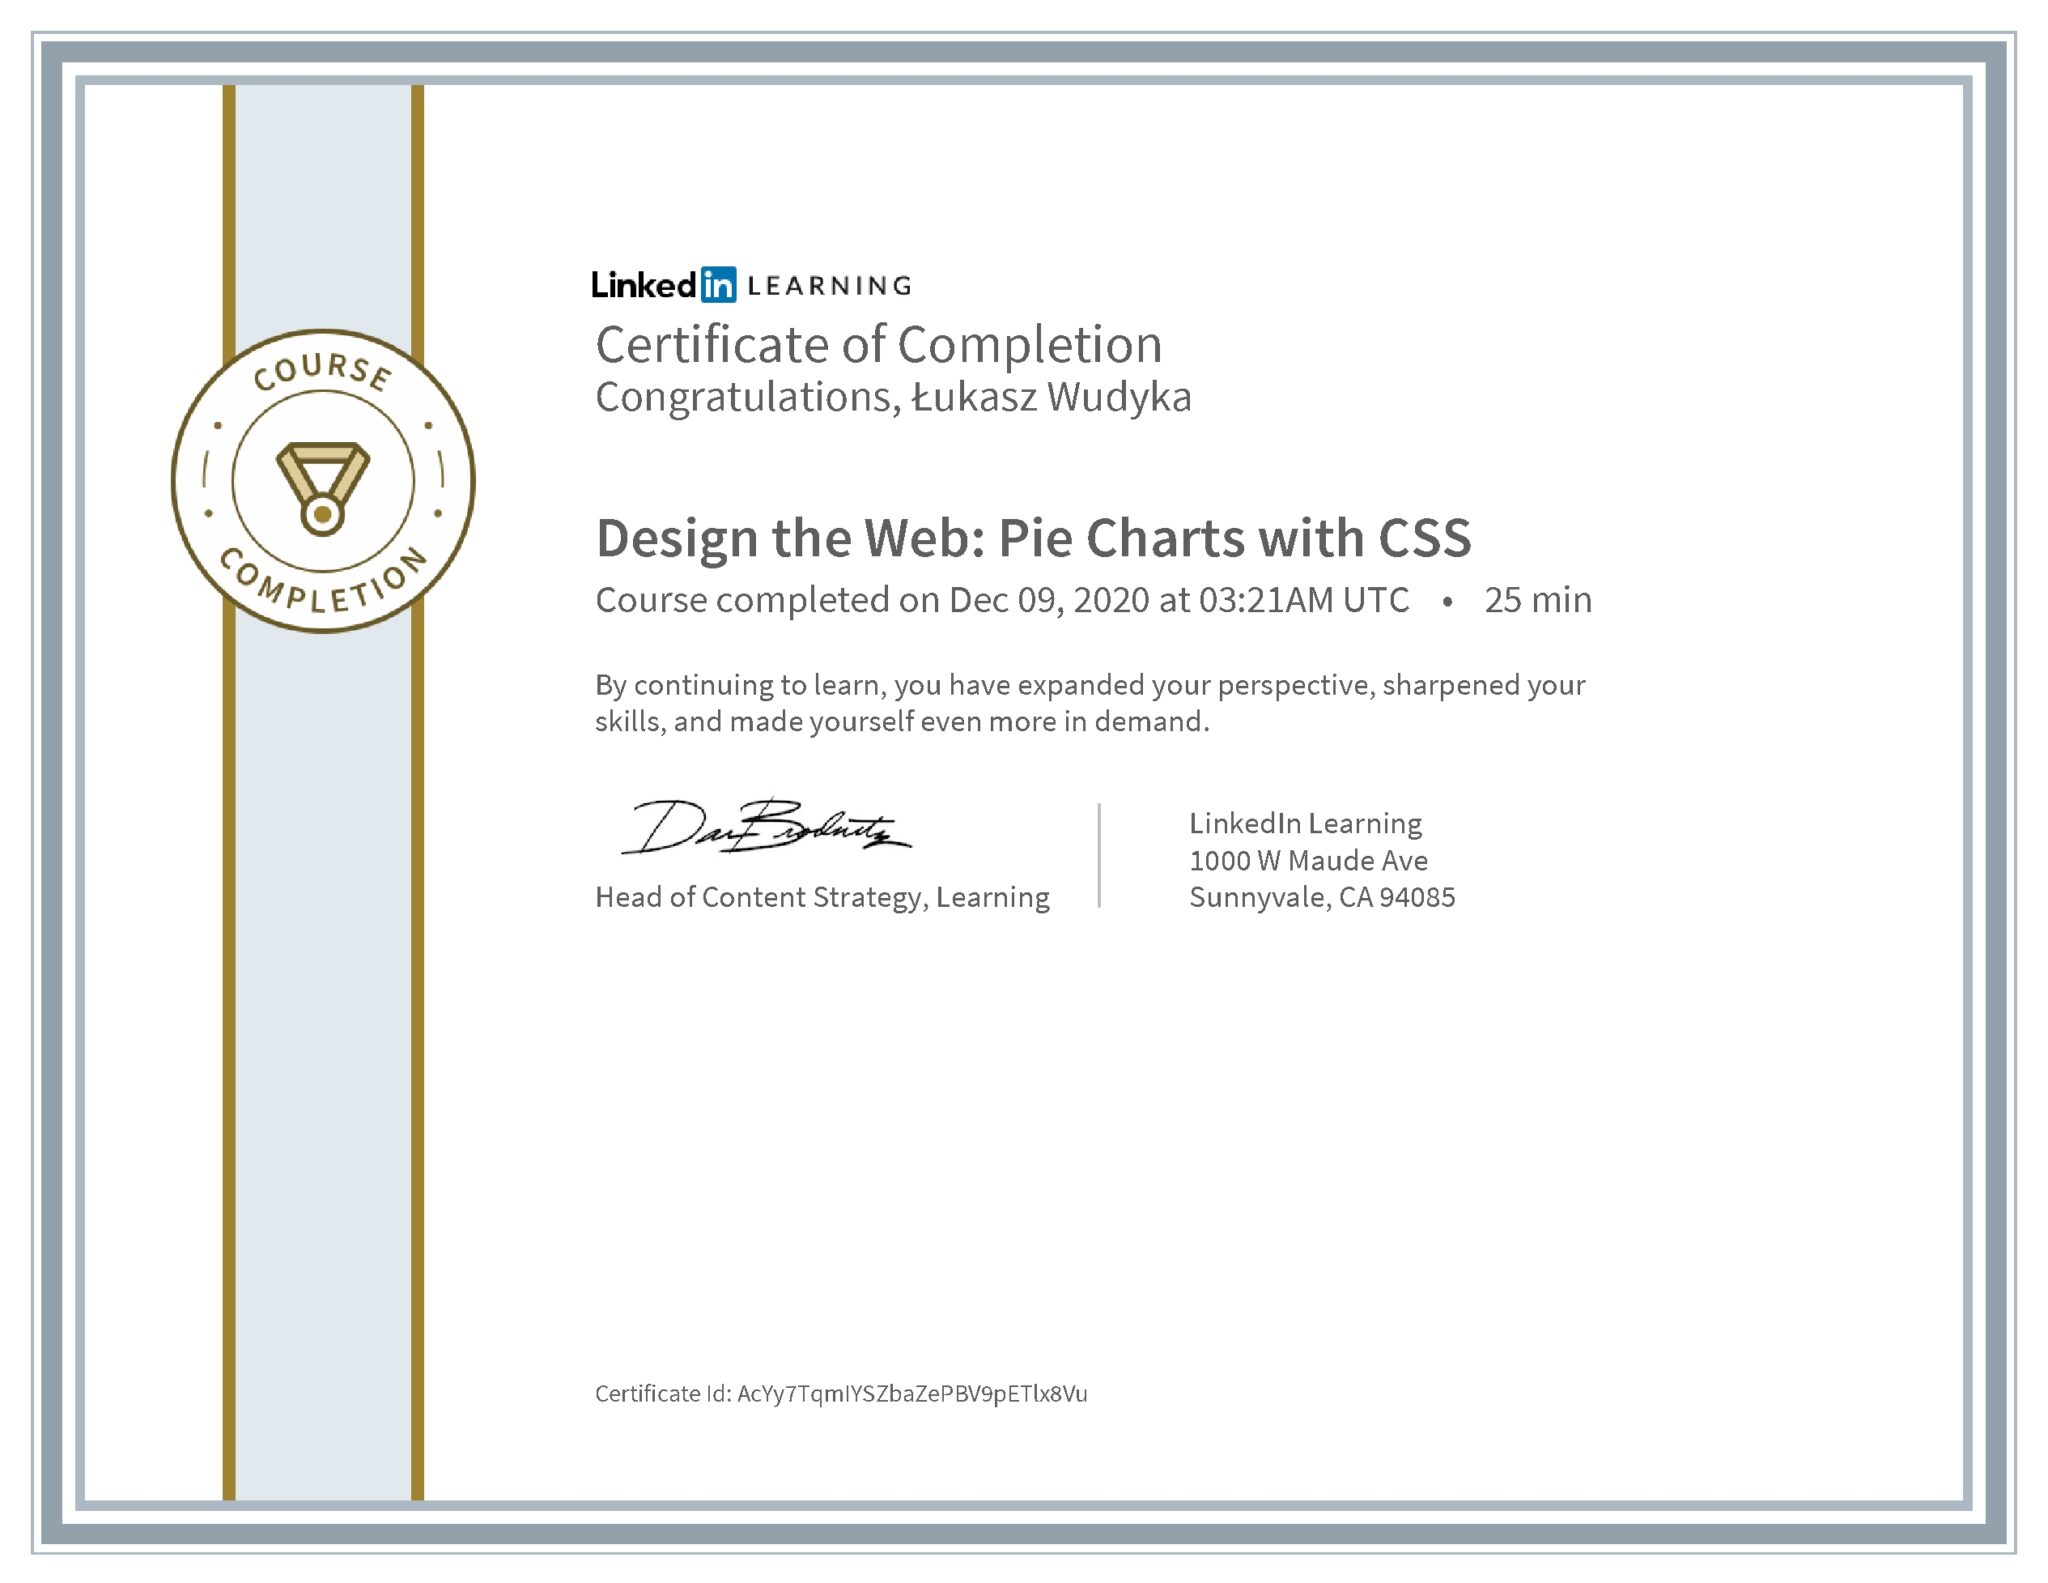 Łukasz Wudyka certyfikat LinkedIn Design the Web: Pie Charts with CSS